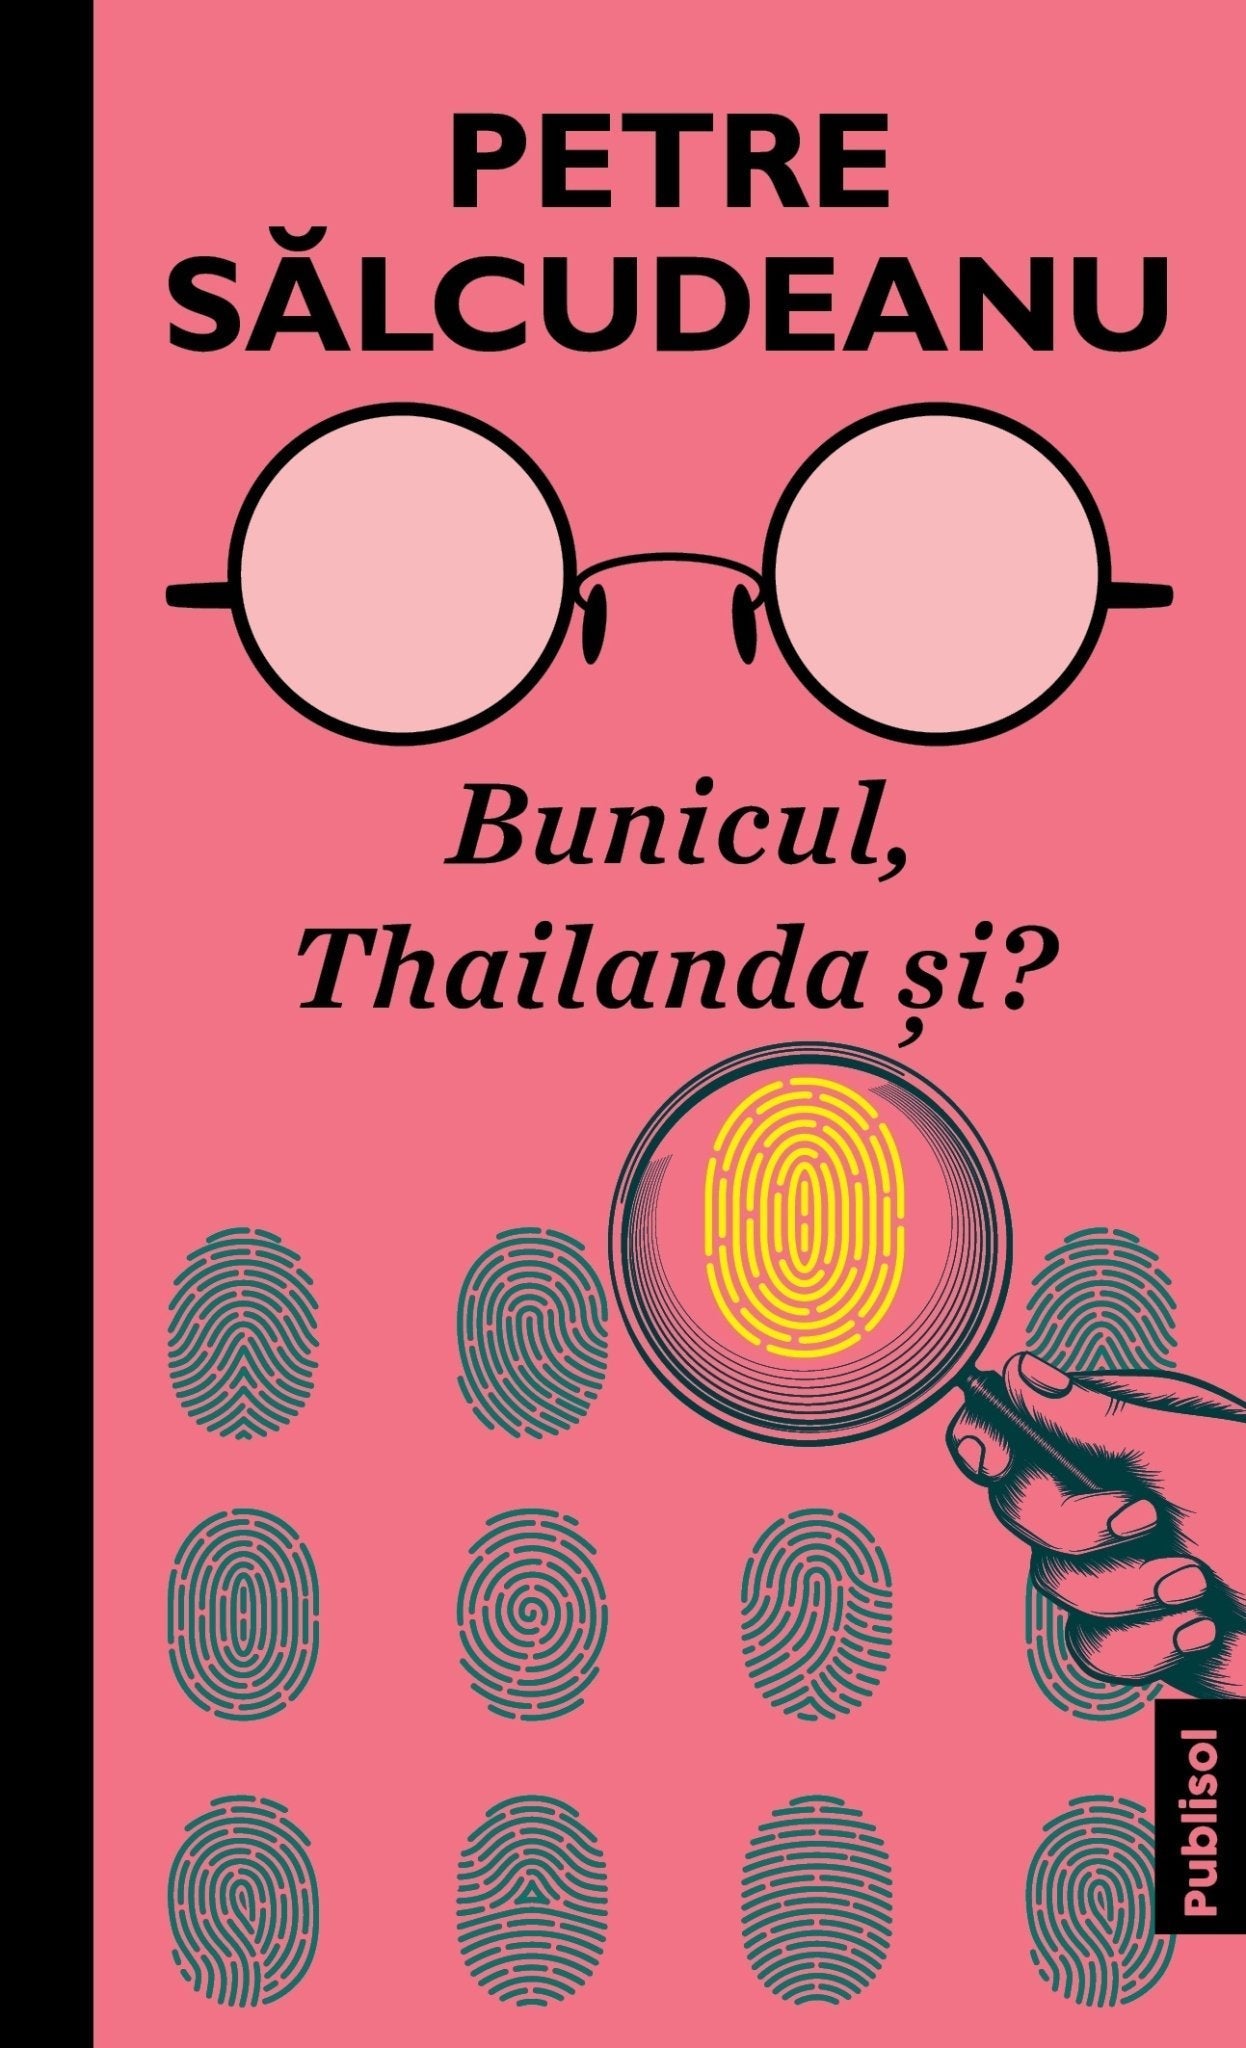 Bunicul, Thailanda si? Ed. digitala - PDF - Publisol.ro